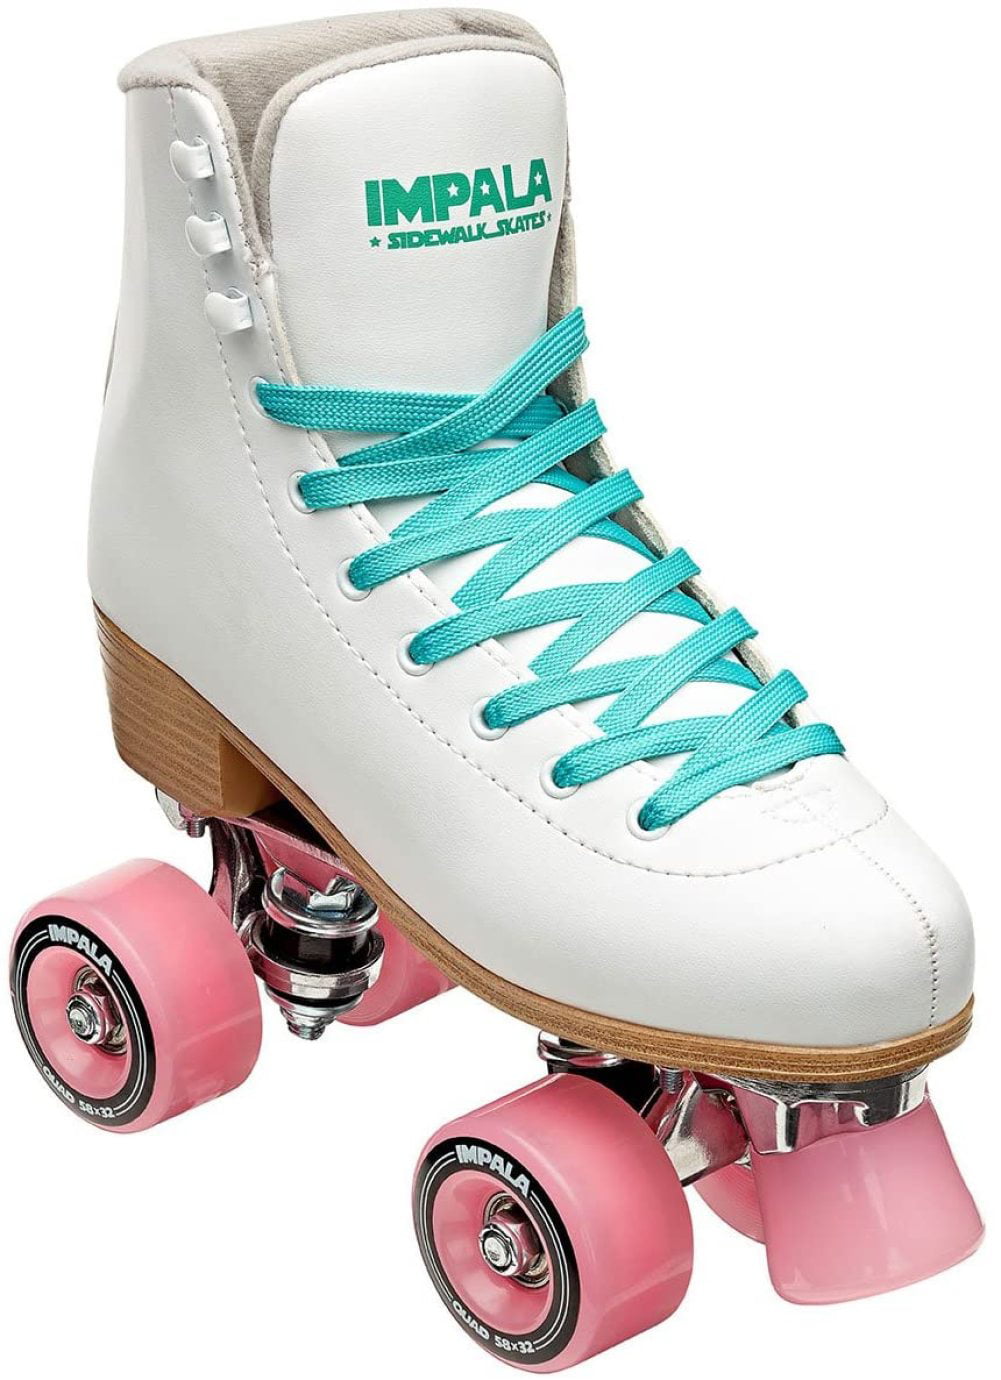 Details about   Impala Sidewalk Quad skate Roller Skates Holographic Size 6 